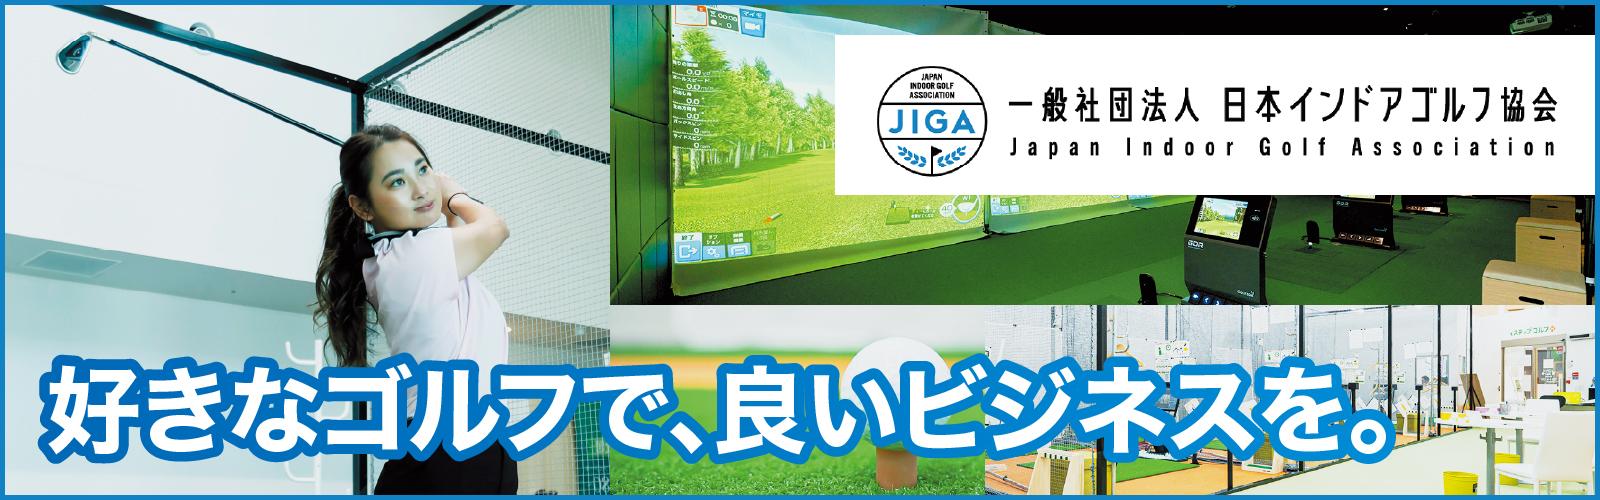 新たなゴルフビジネス。一般社団法人日本インドアゴルフ協会